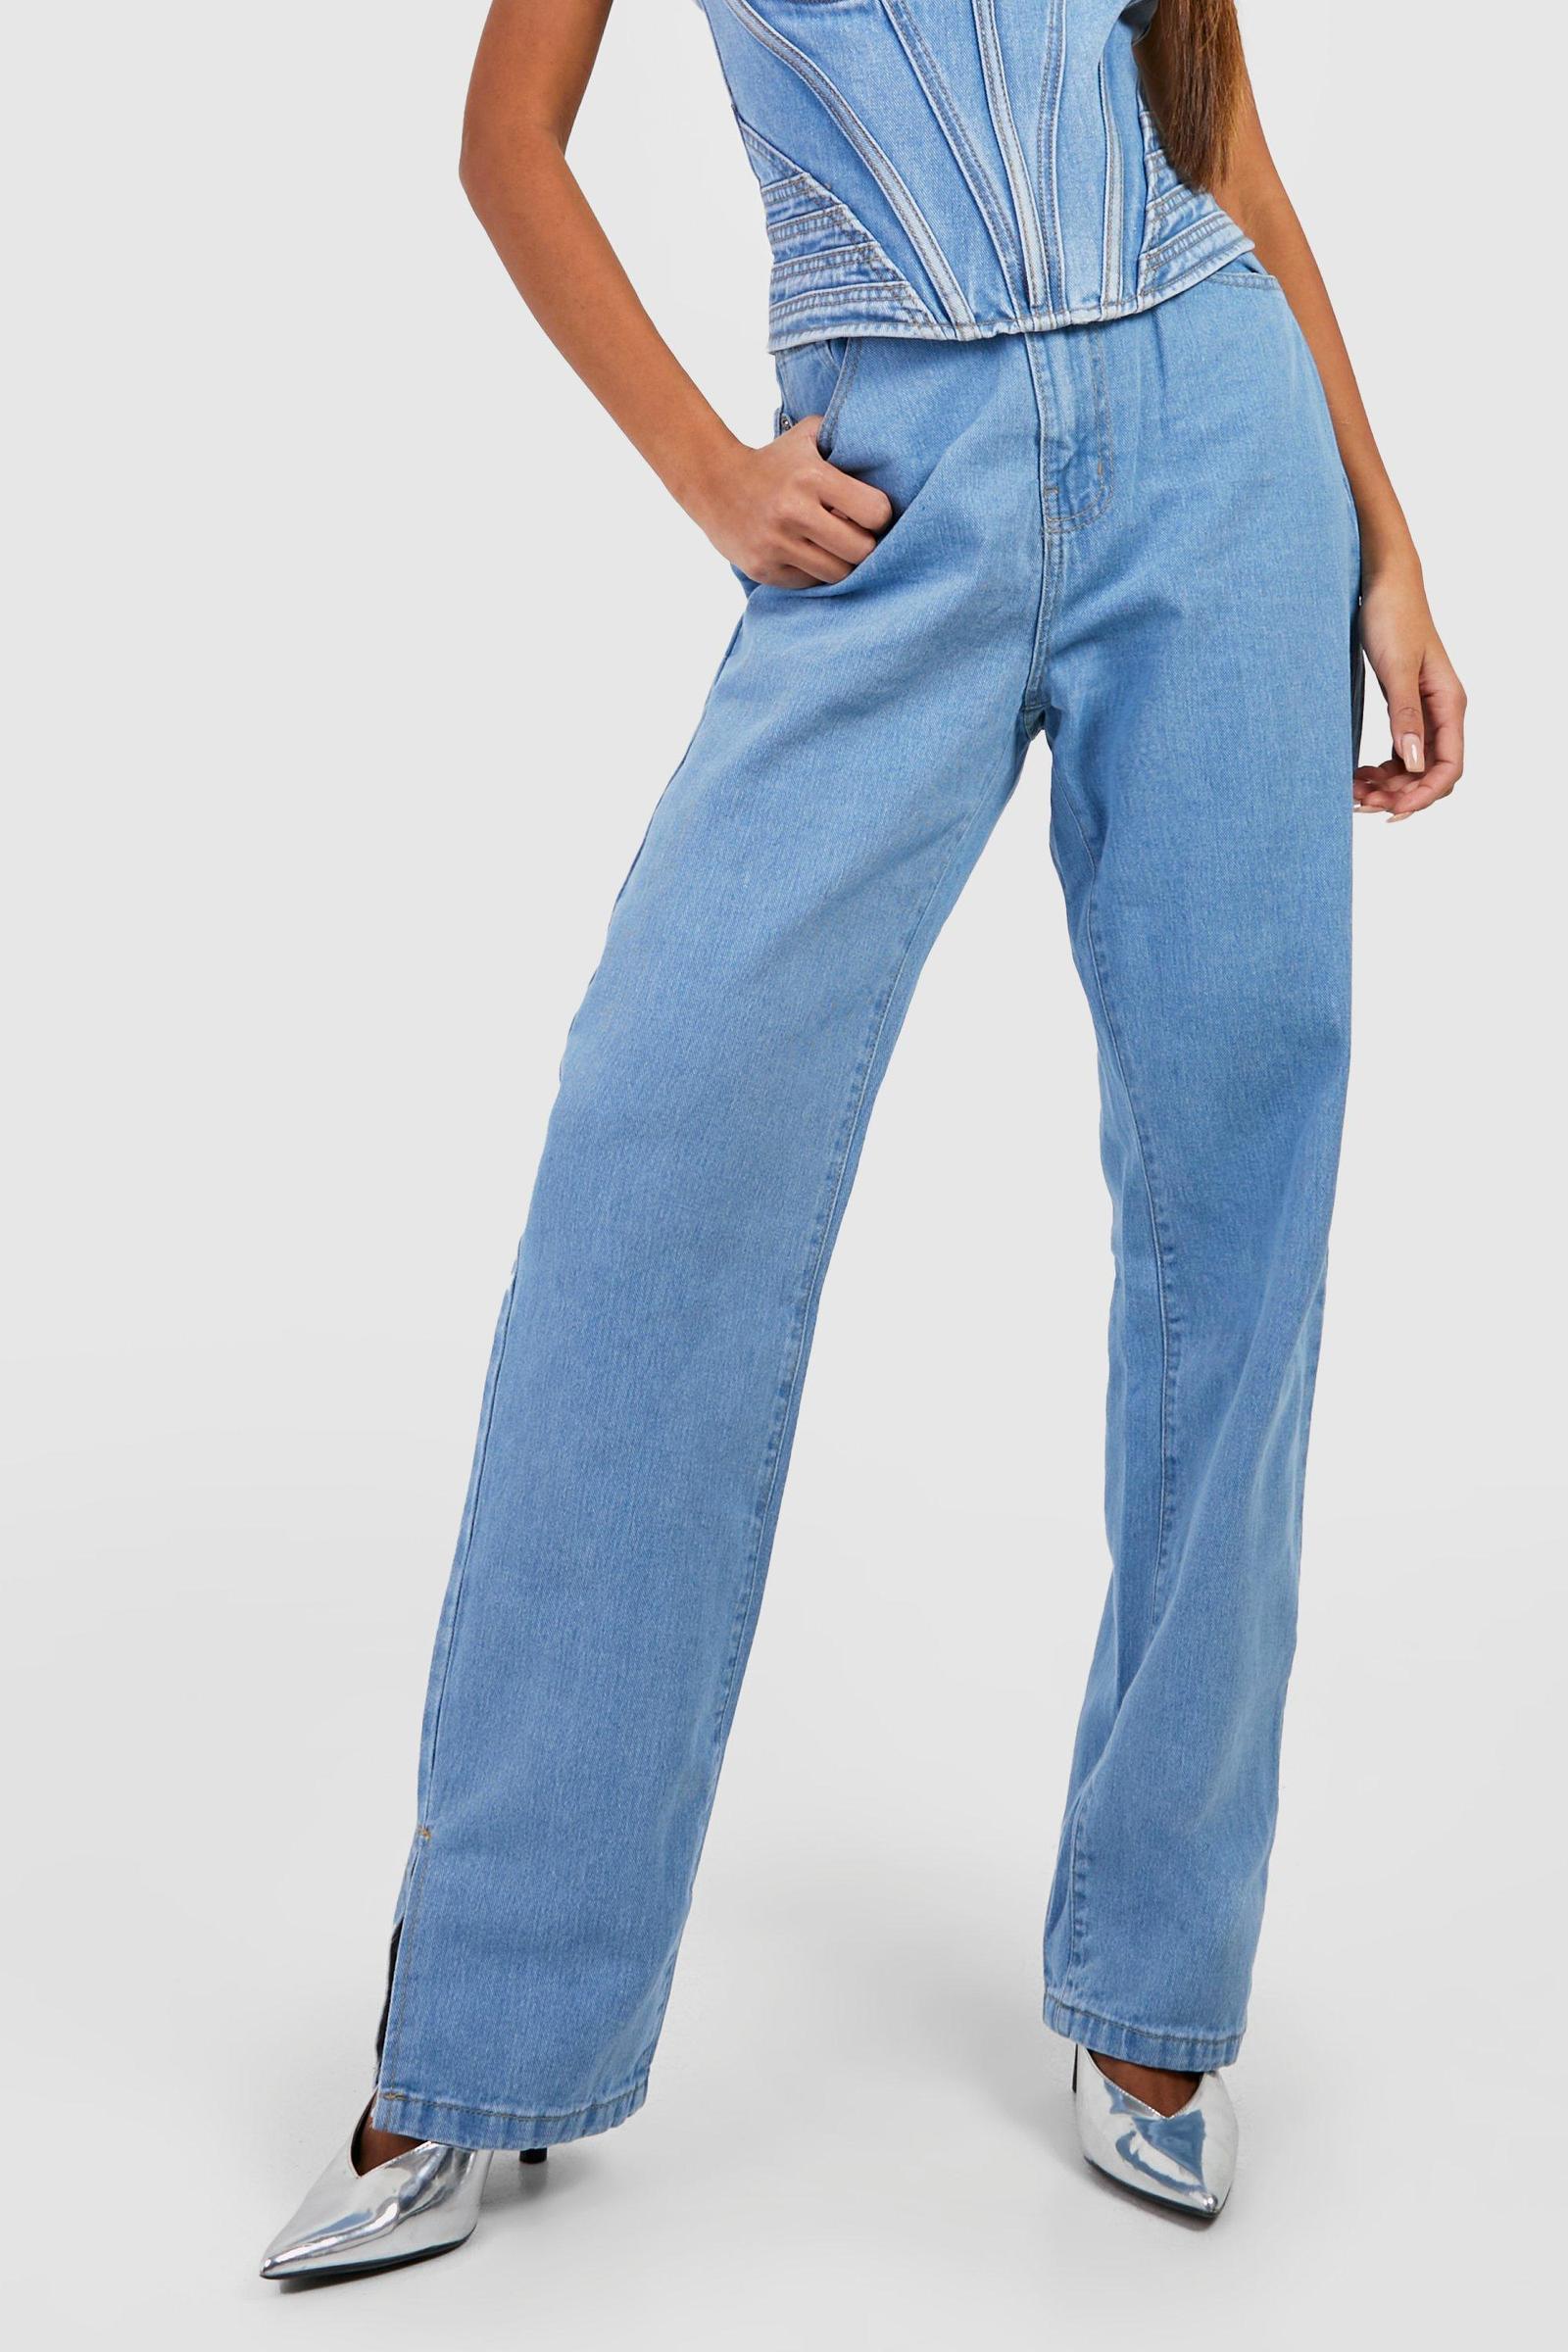 niebieskie spodnie jeans wysoki stan rozcięcie